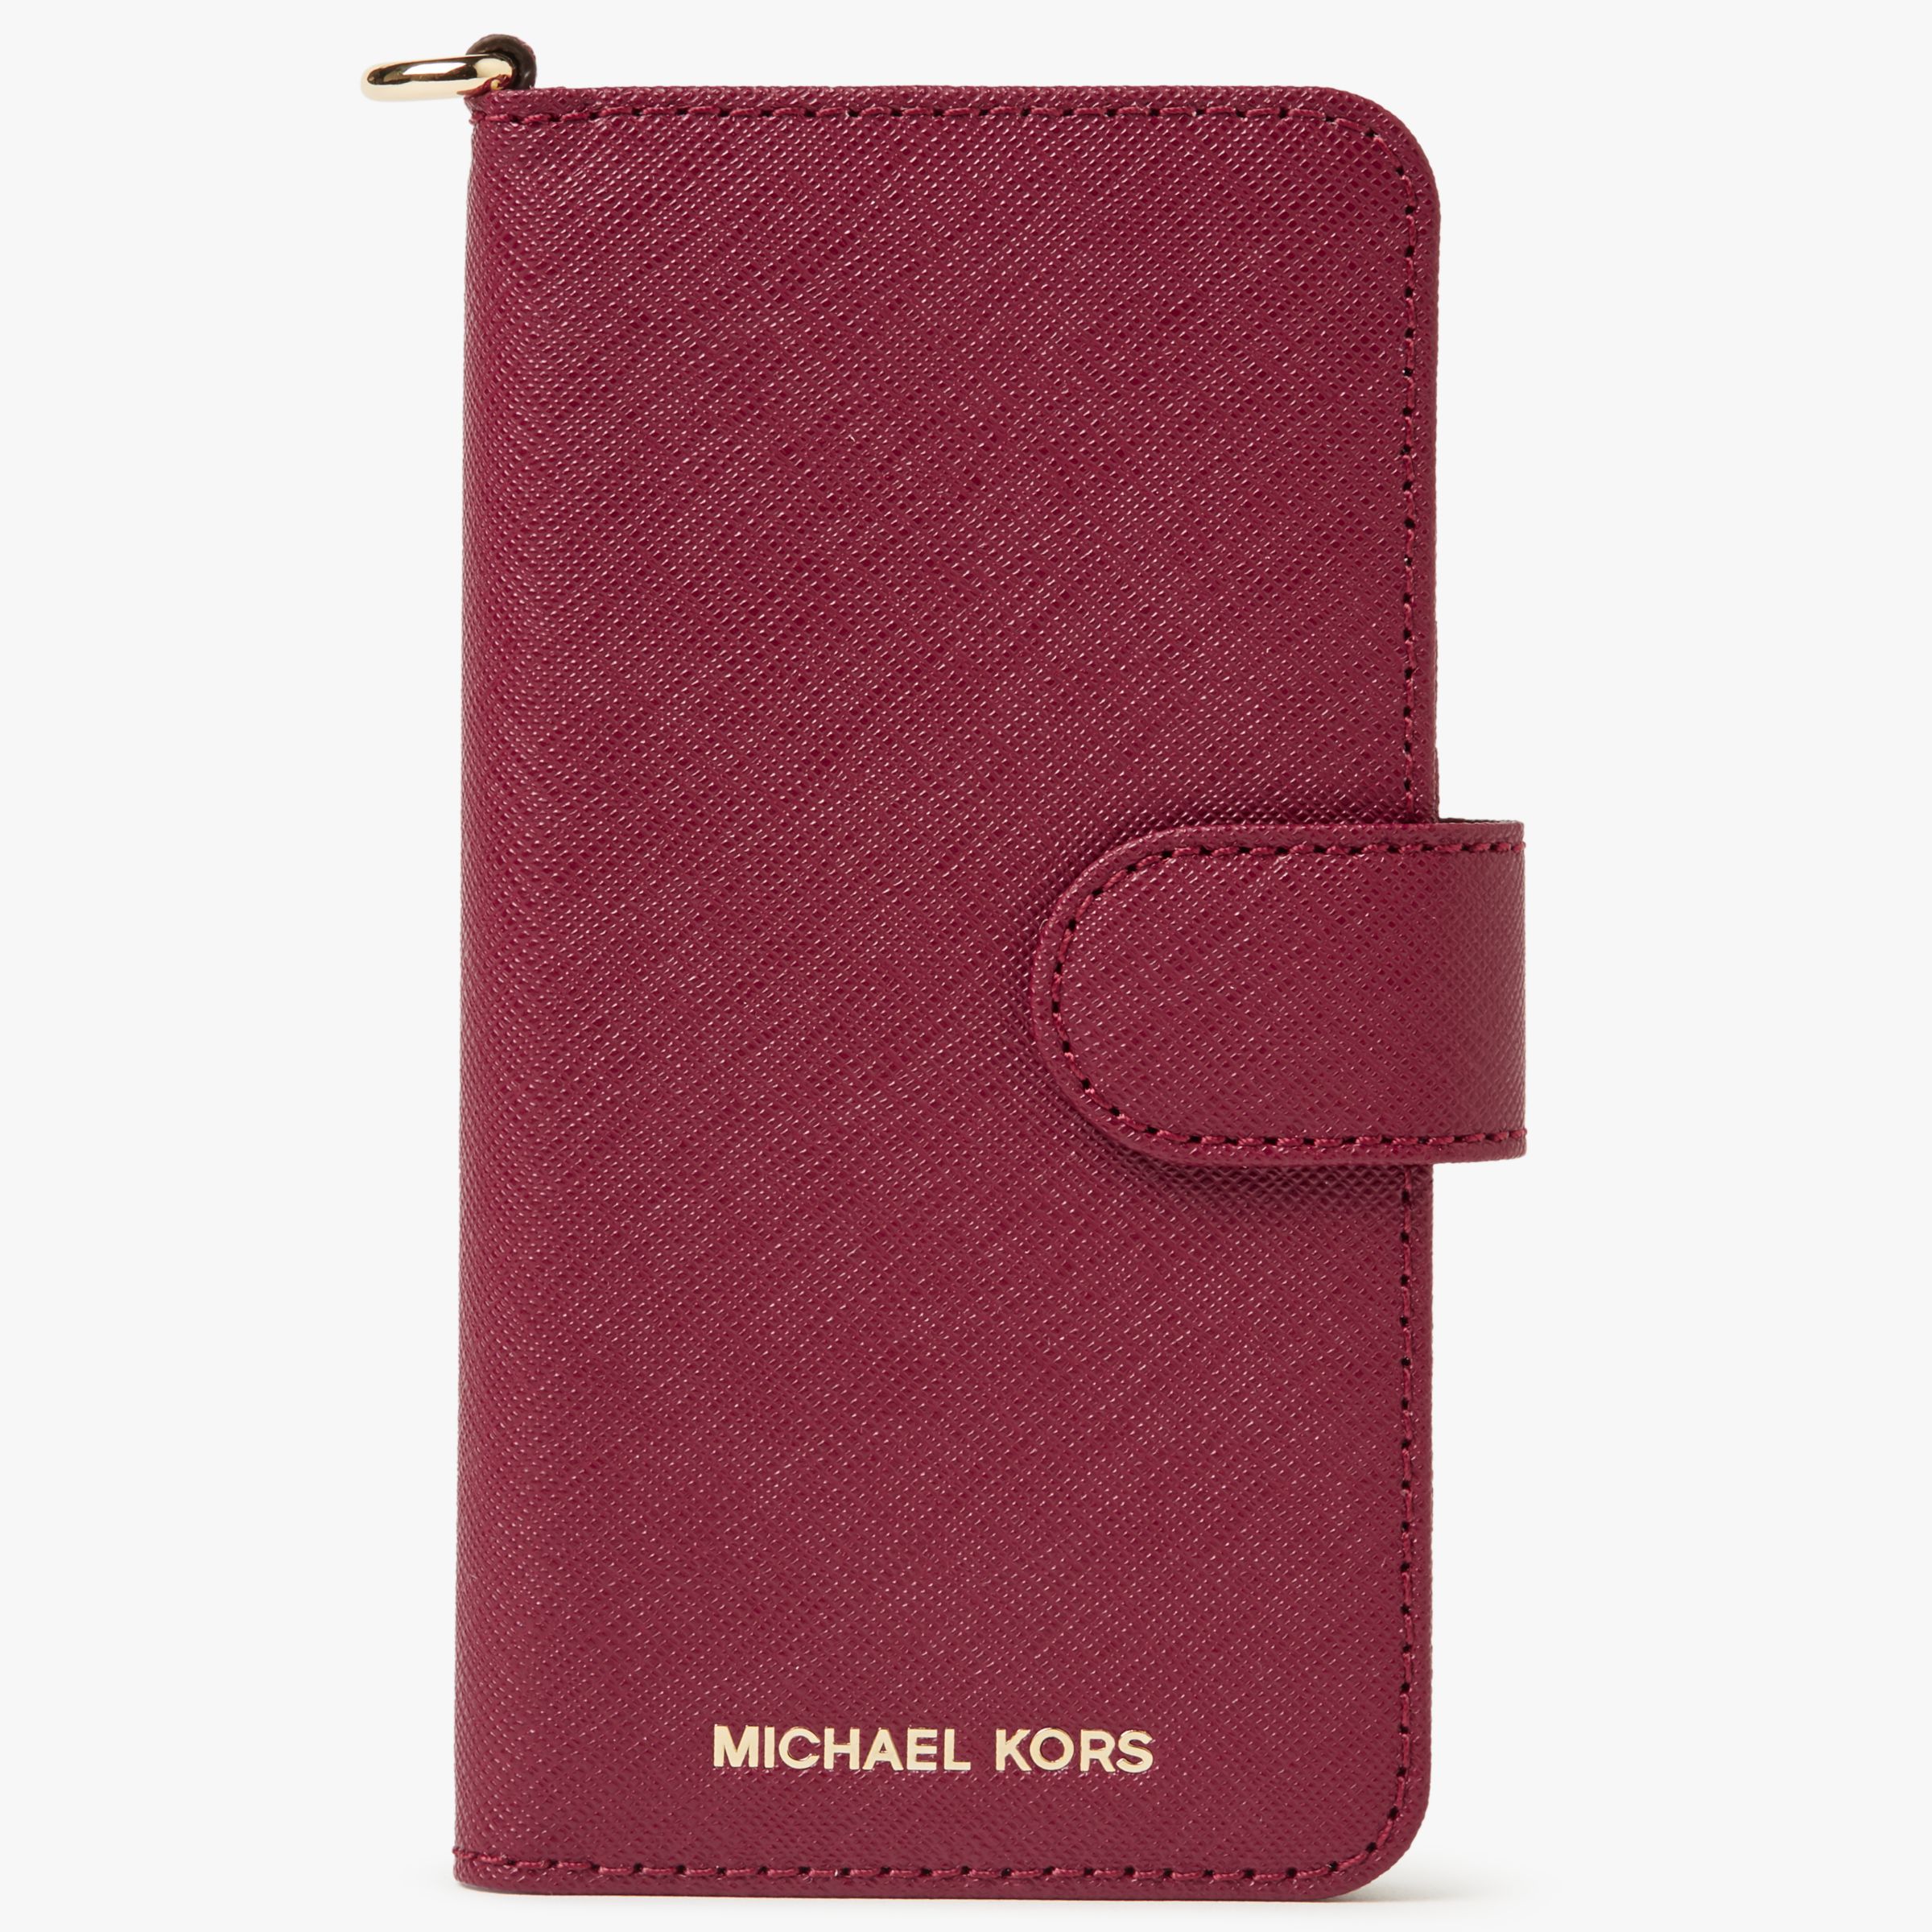 iphone 8 michael kors wallet case